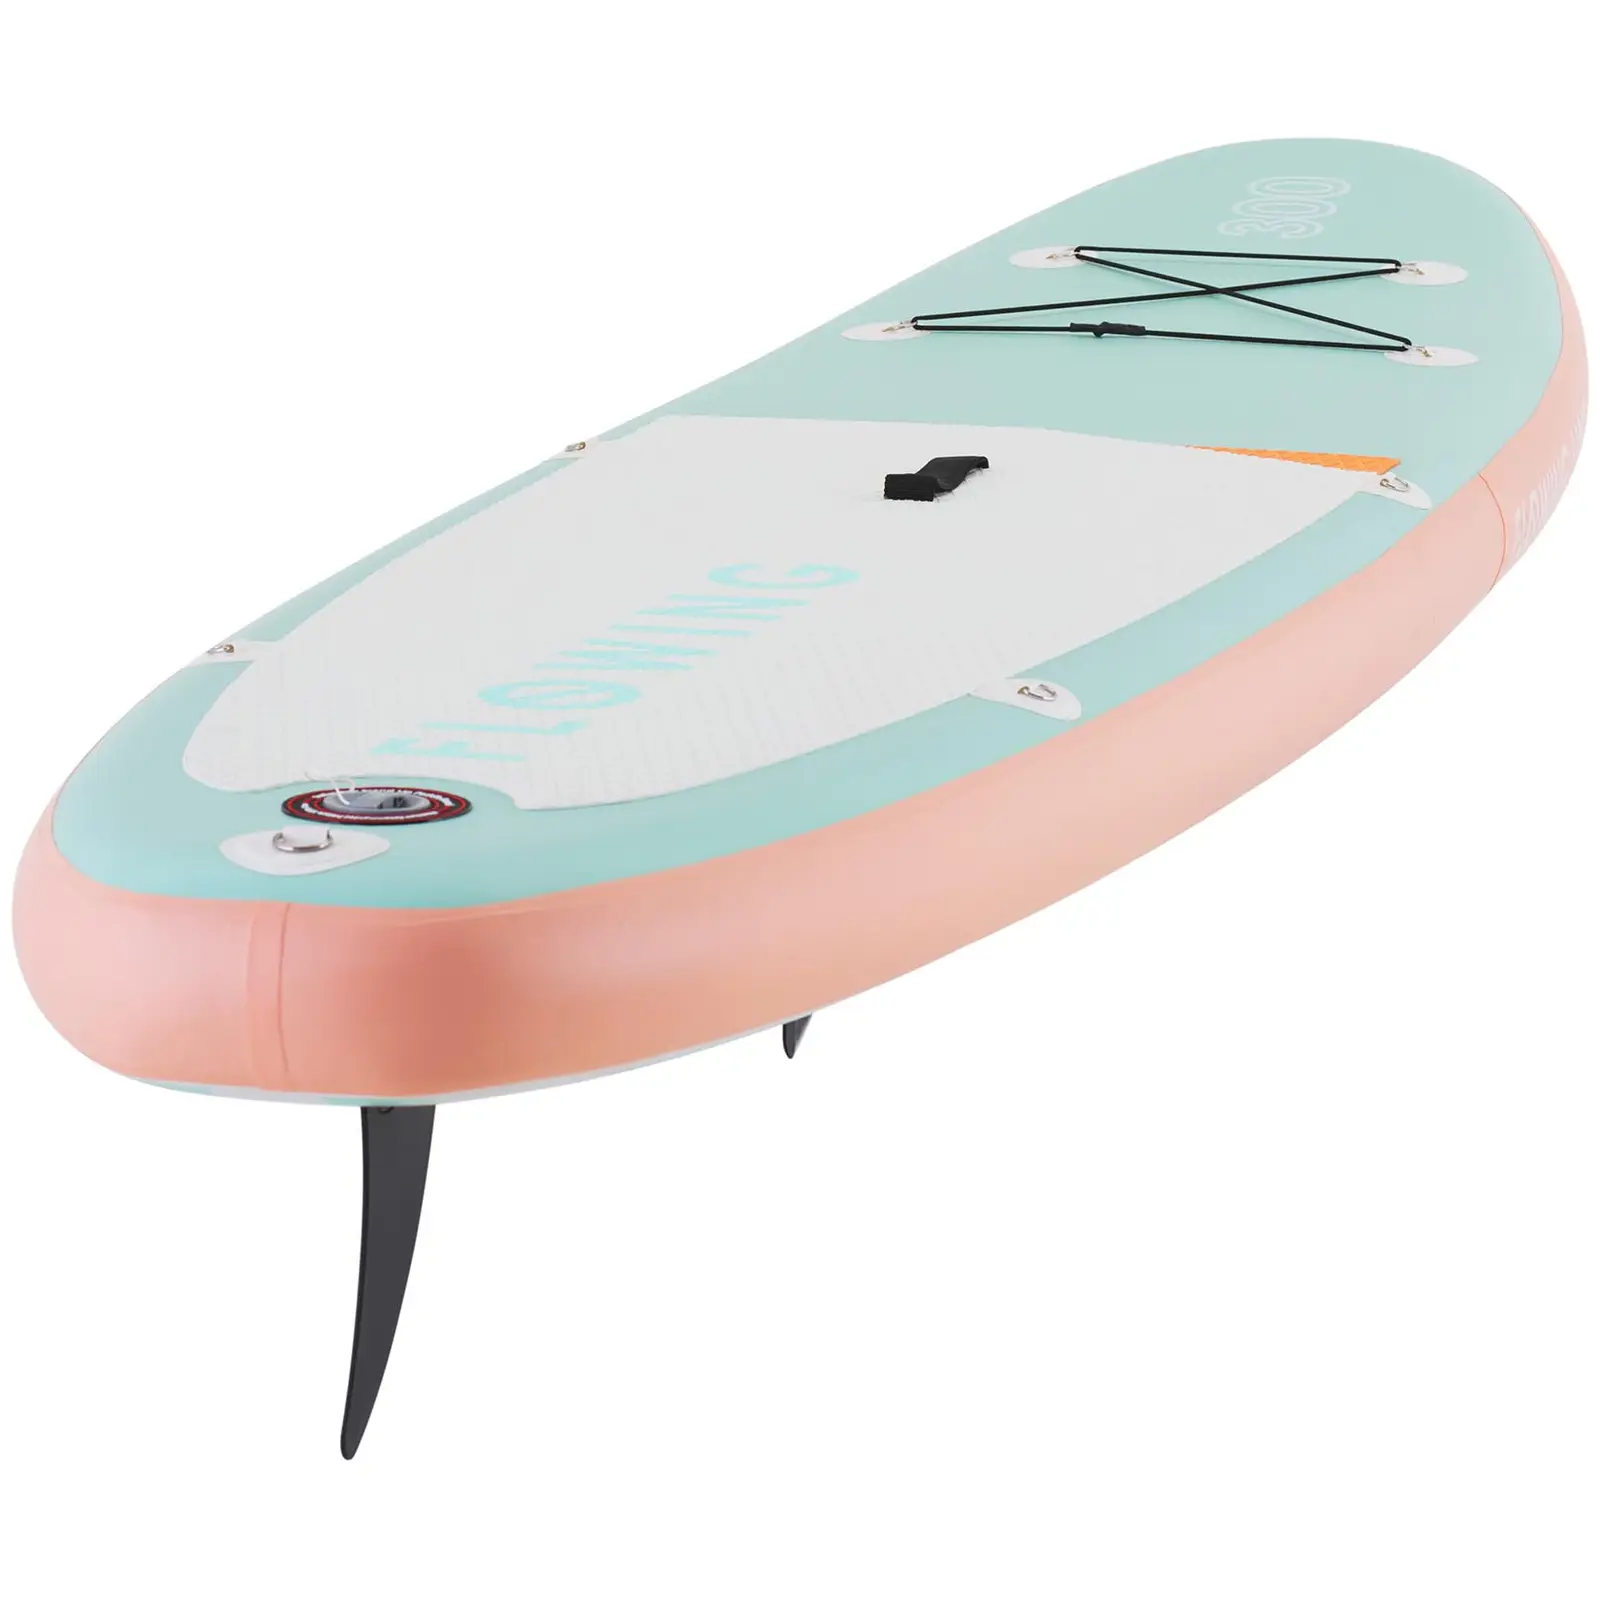 Brugt Paddle-board - 100 kg - oppusteligt - lyserødt